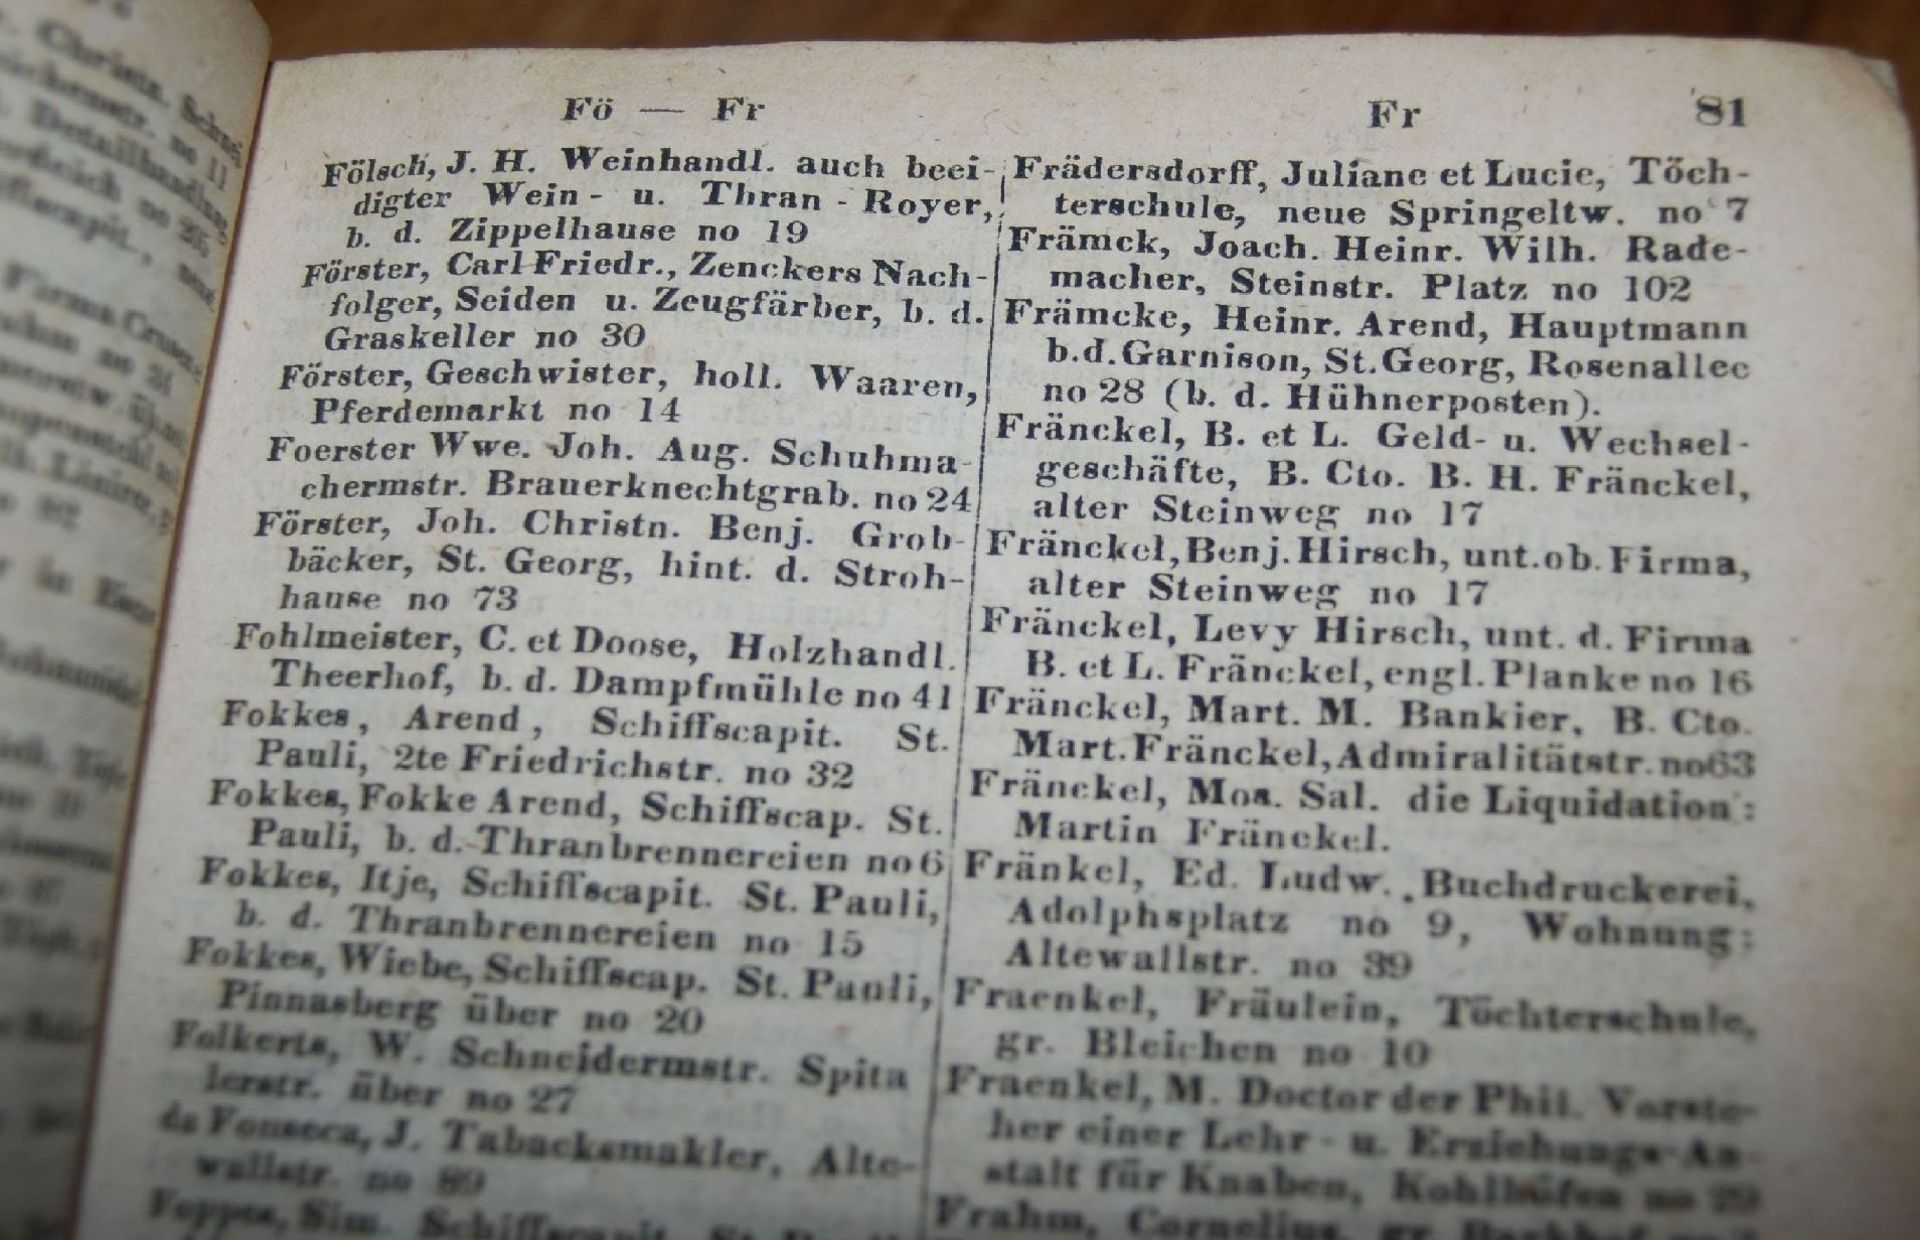 Hamburgisches Adress-Buch 1836, Bibliothekseinband, seitl. beschriftet, 20x13 cm, H-6,5 cm- - -22.61 - Bild 4 aus 9